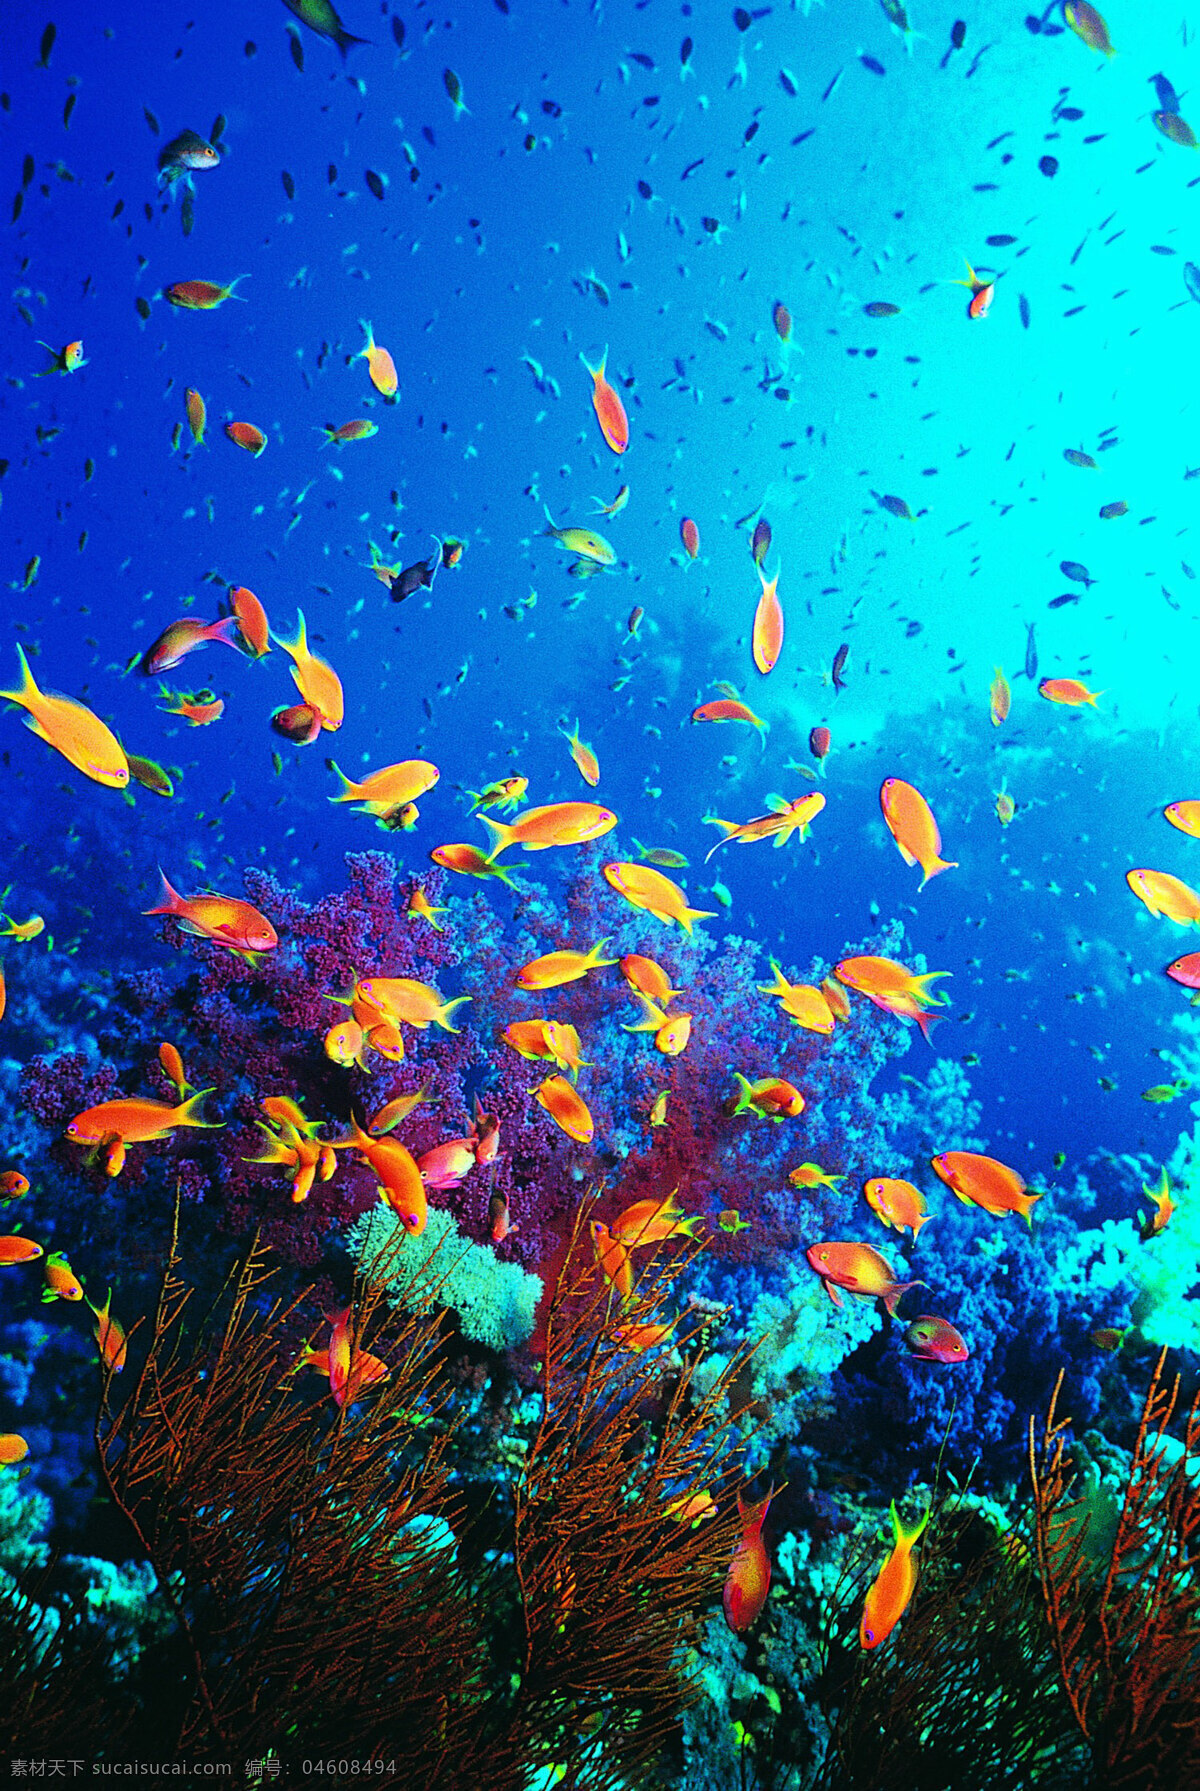 海底 世界 海底世界 海洋世界 珊瑚 3d海洋 海洋节 海洋文化节 海洋海报 海洋主题 海洋生物展 梦幻海洋节 海洋乐园 缤纷海洋乐园 鱼 蓝色